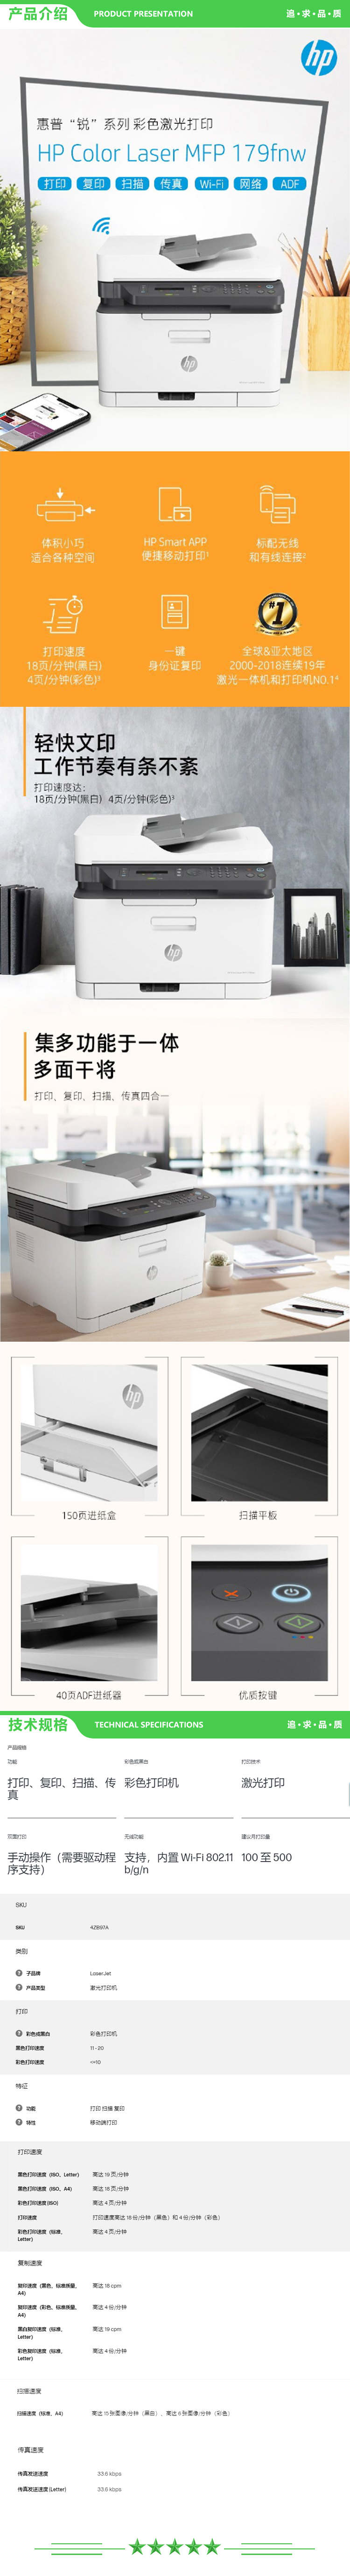 惠普 HP Color Laser MFP 179fnw A4彩色多功能一体机 18页（复印+打印+扫描+传真+输稿器） 2.jpg